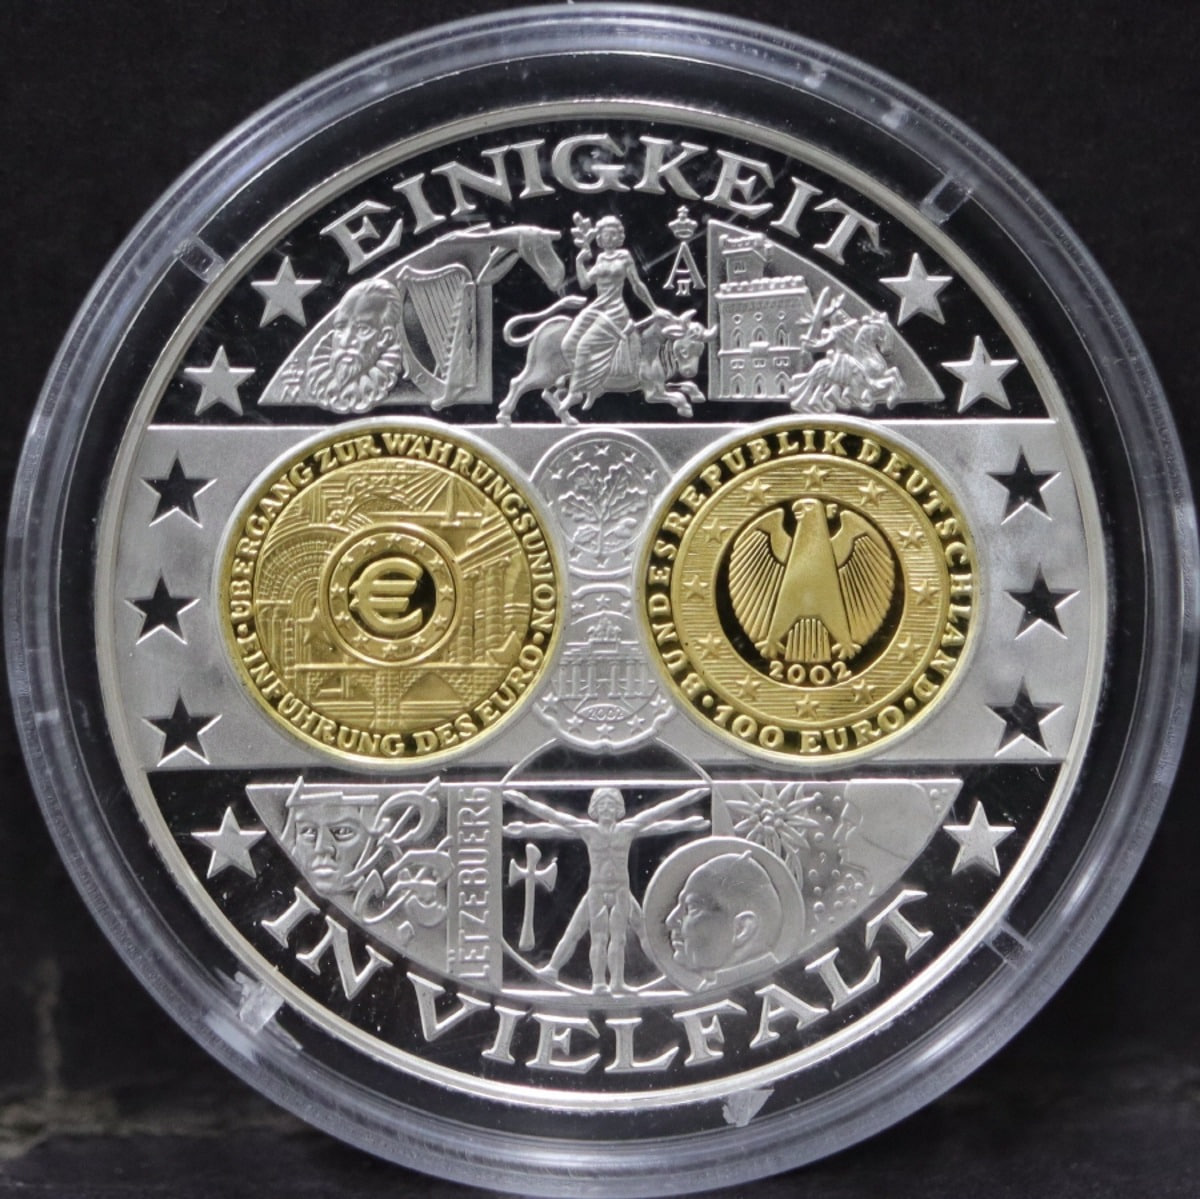 독일 2001년 독일 화폐 (주화) 1200년 역사를 표현한 - 2002년 최초 유로화 100유로 기념 금화 도안 은메달